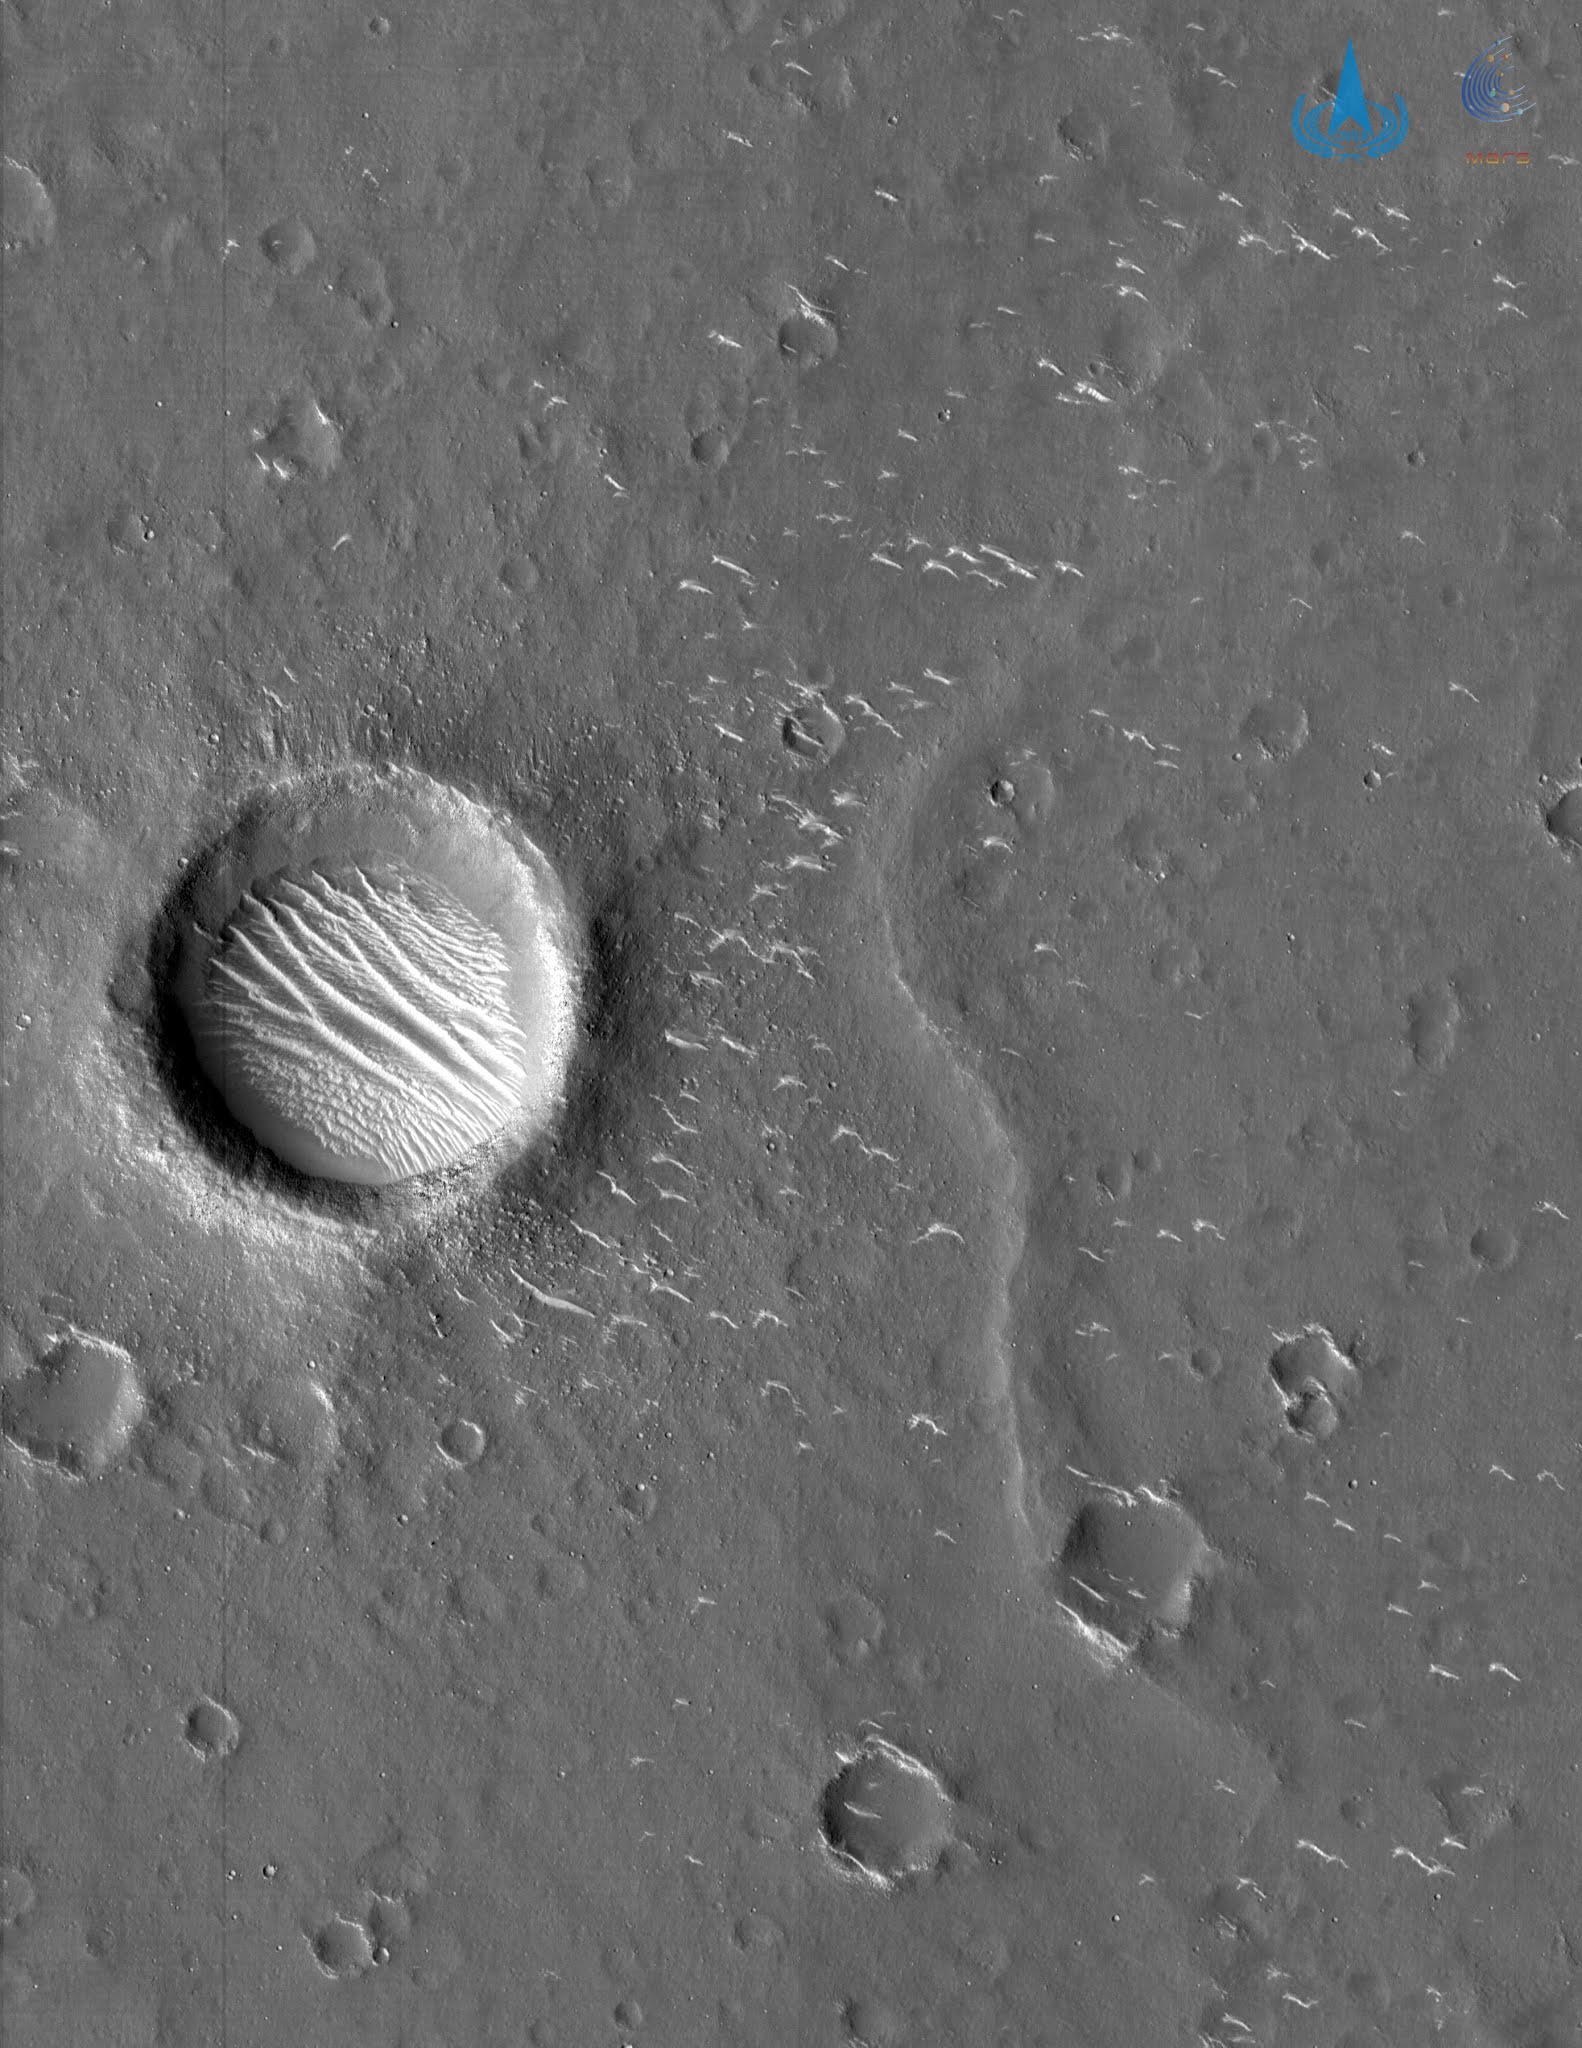 صور جديدة لكوكب المريخ